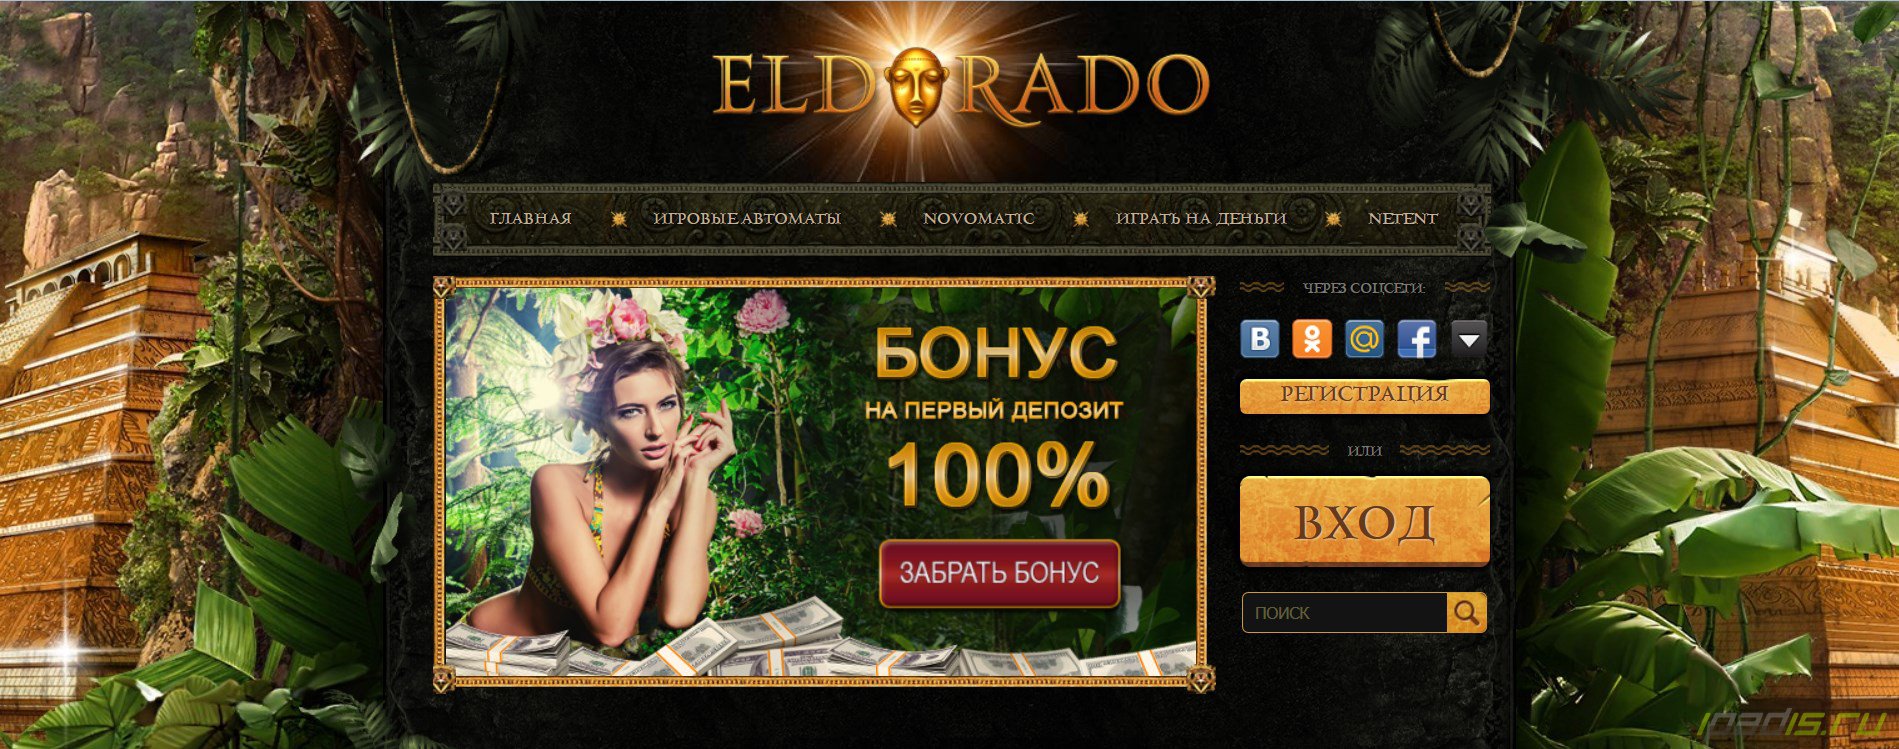 эльдорадо casino регистрация